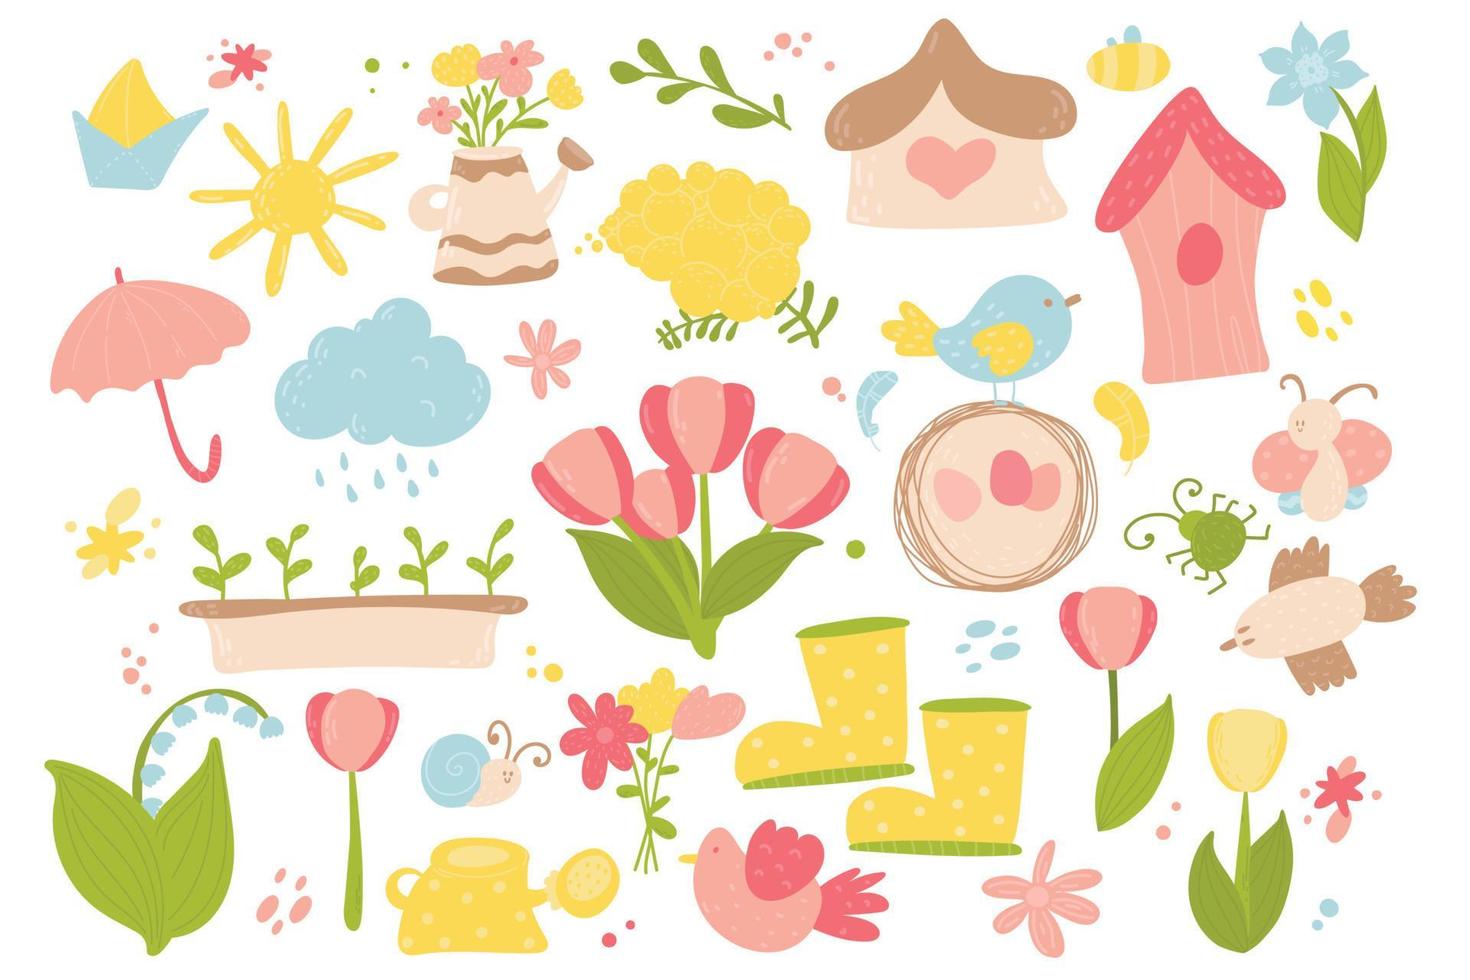 vår och påsk doodle samling, blommor och dekorationer. påsk våren set med söta ägg, fåglar, bin, fjärilar. handritad vektorillustration. vektor